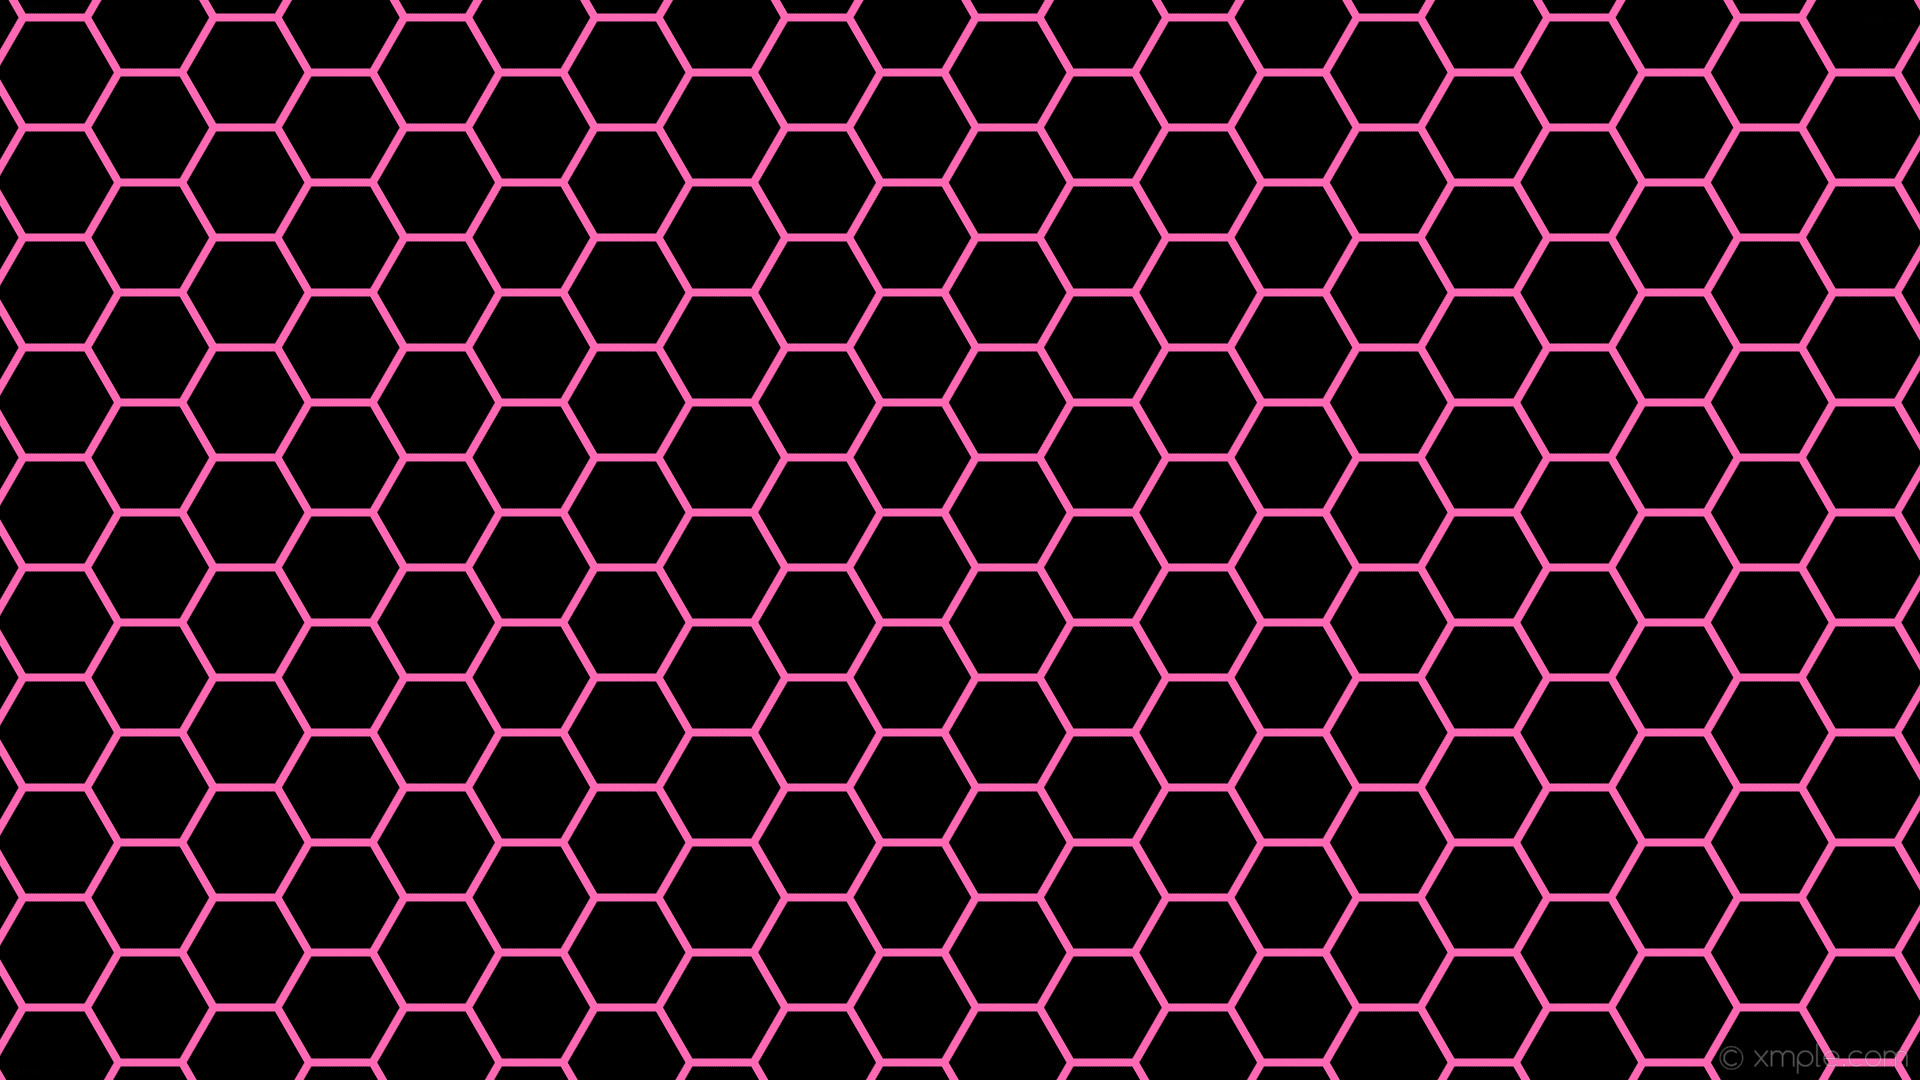 1920x1080 wallpaper beehive black honeycomb pink hexagon hot pink #000000 #ff69b4  diagonal 30Â° 8px